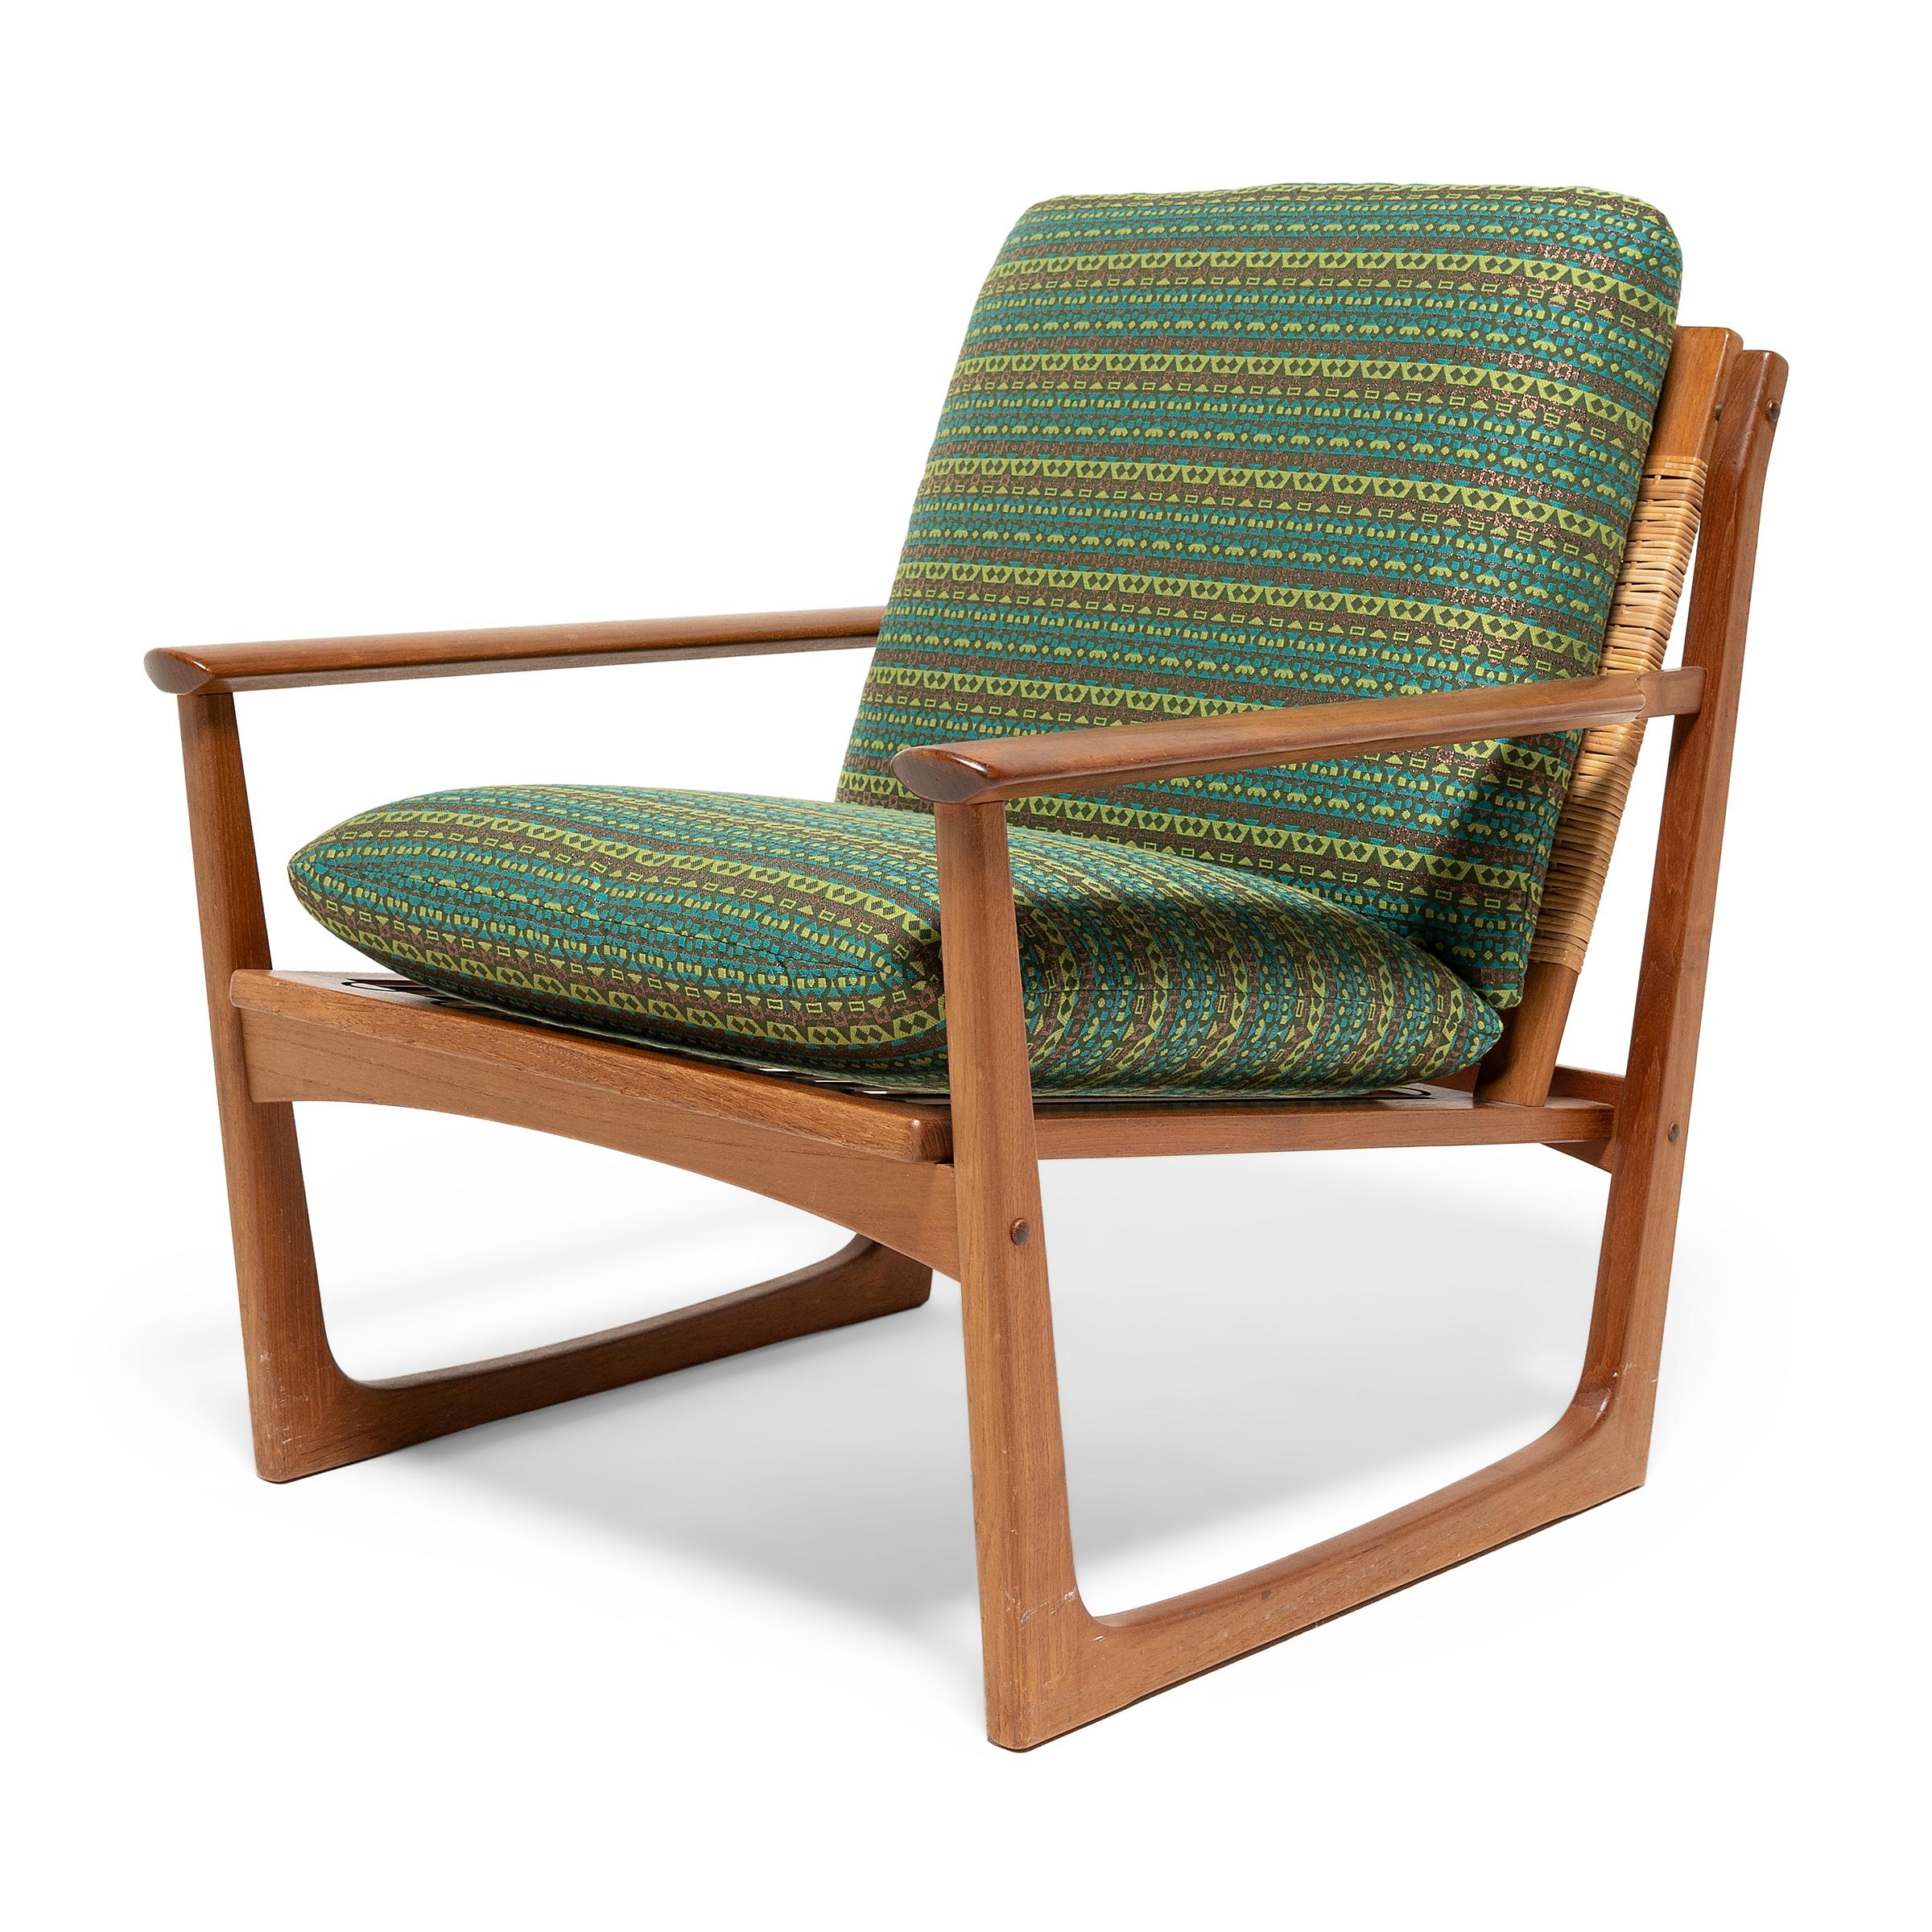 Cette superbe paire de fauteuils rembourrés du milieu du siècle illustre le style moderne danois avec ses lignes épurées et sa forme ouverte et minimaliste. Le design est attribué au designer danois Hans Olsen et a été produit par le fabricant de